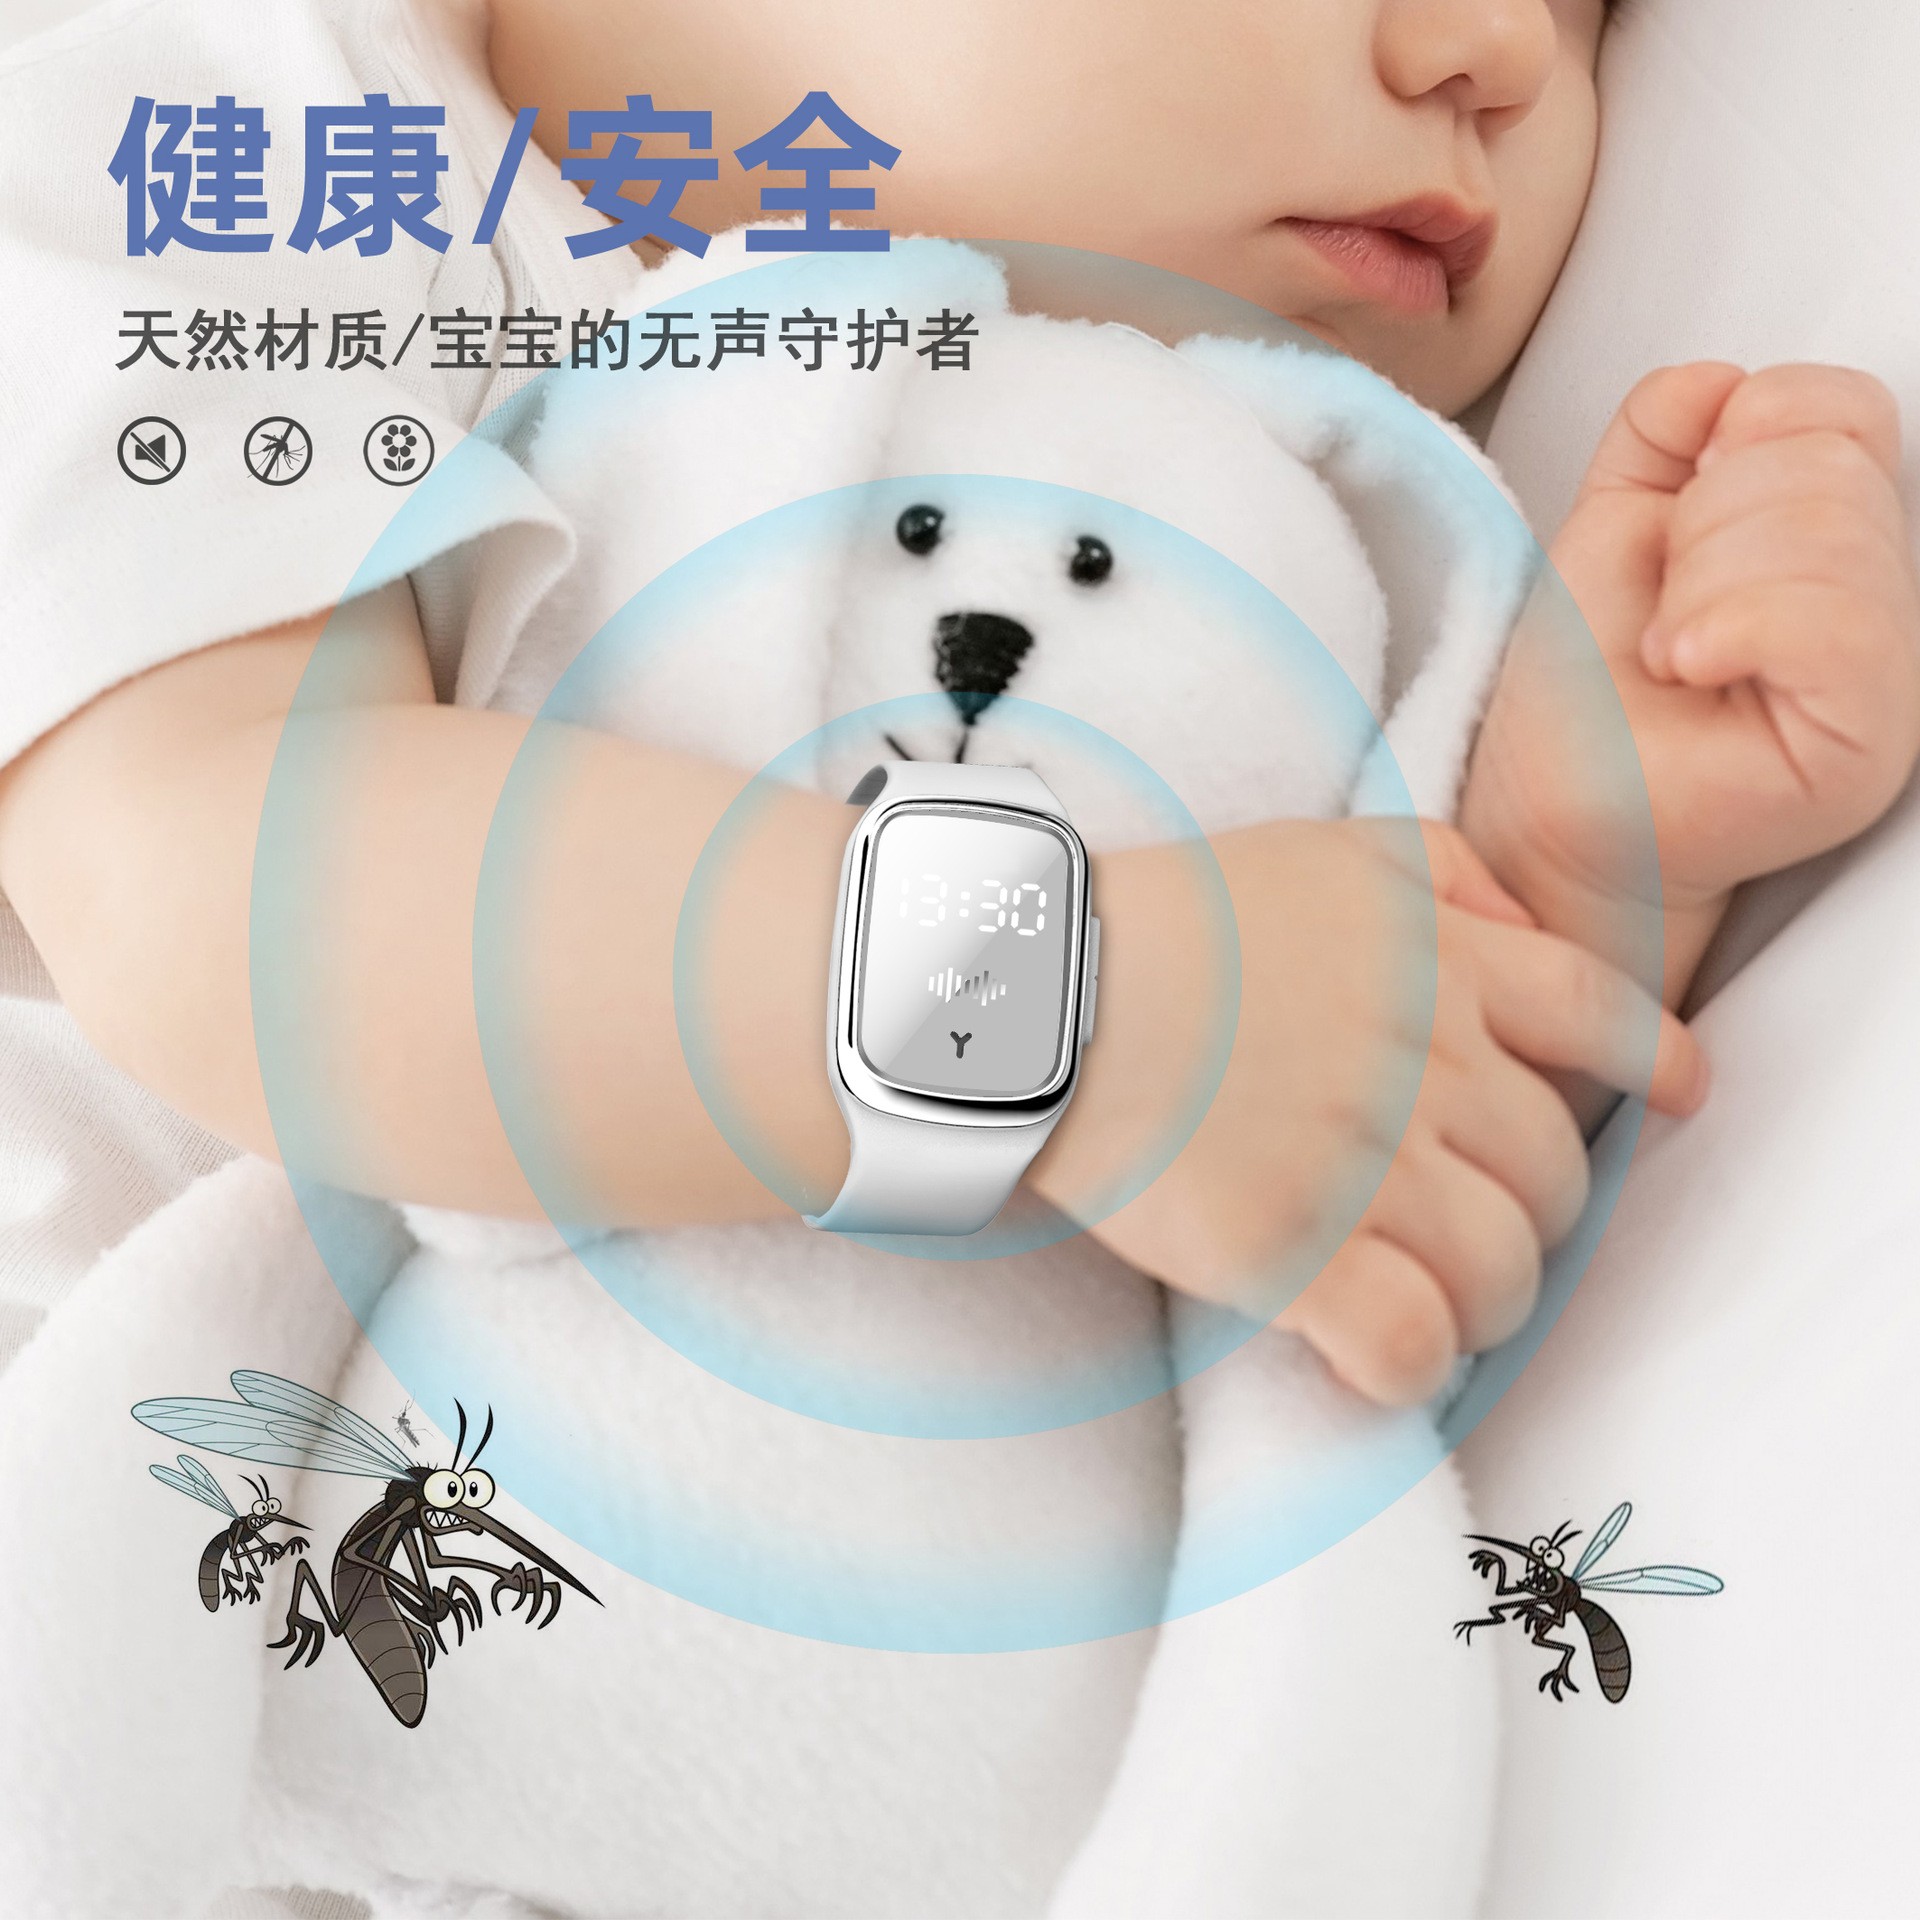 2020新款二代驱蚊手环 超声波电子灭蚊便携式学生驱蚊器 硅胶手环详情3